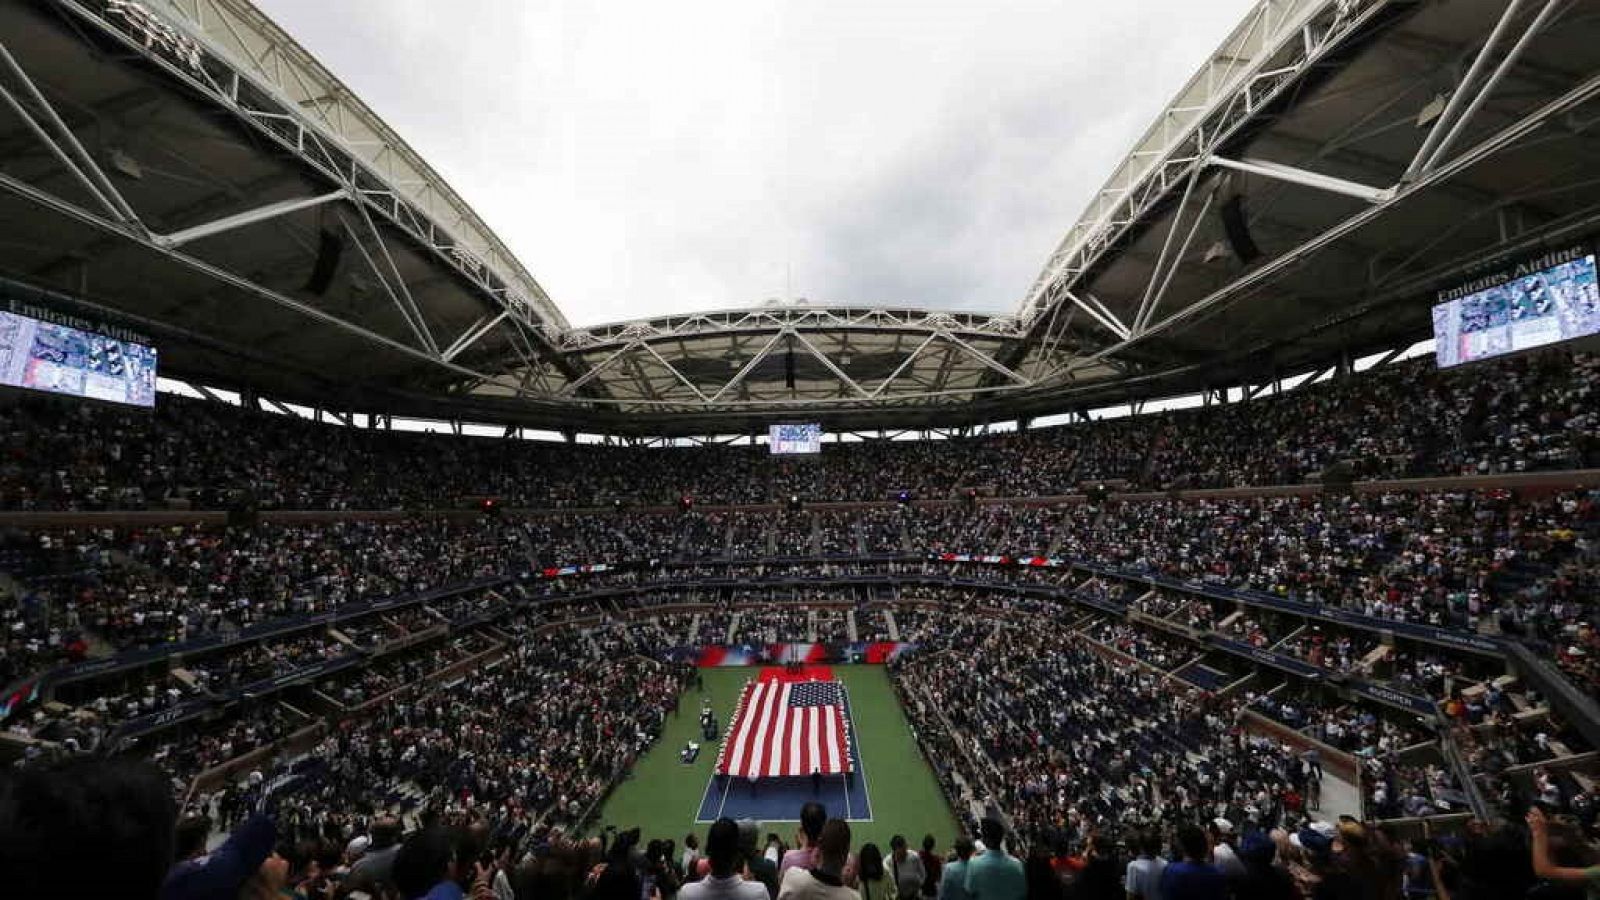 El US Open es el último Grand Slam del año que se lleva celebrando desde 1881 de forma ininterrumpida